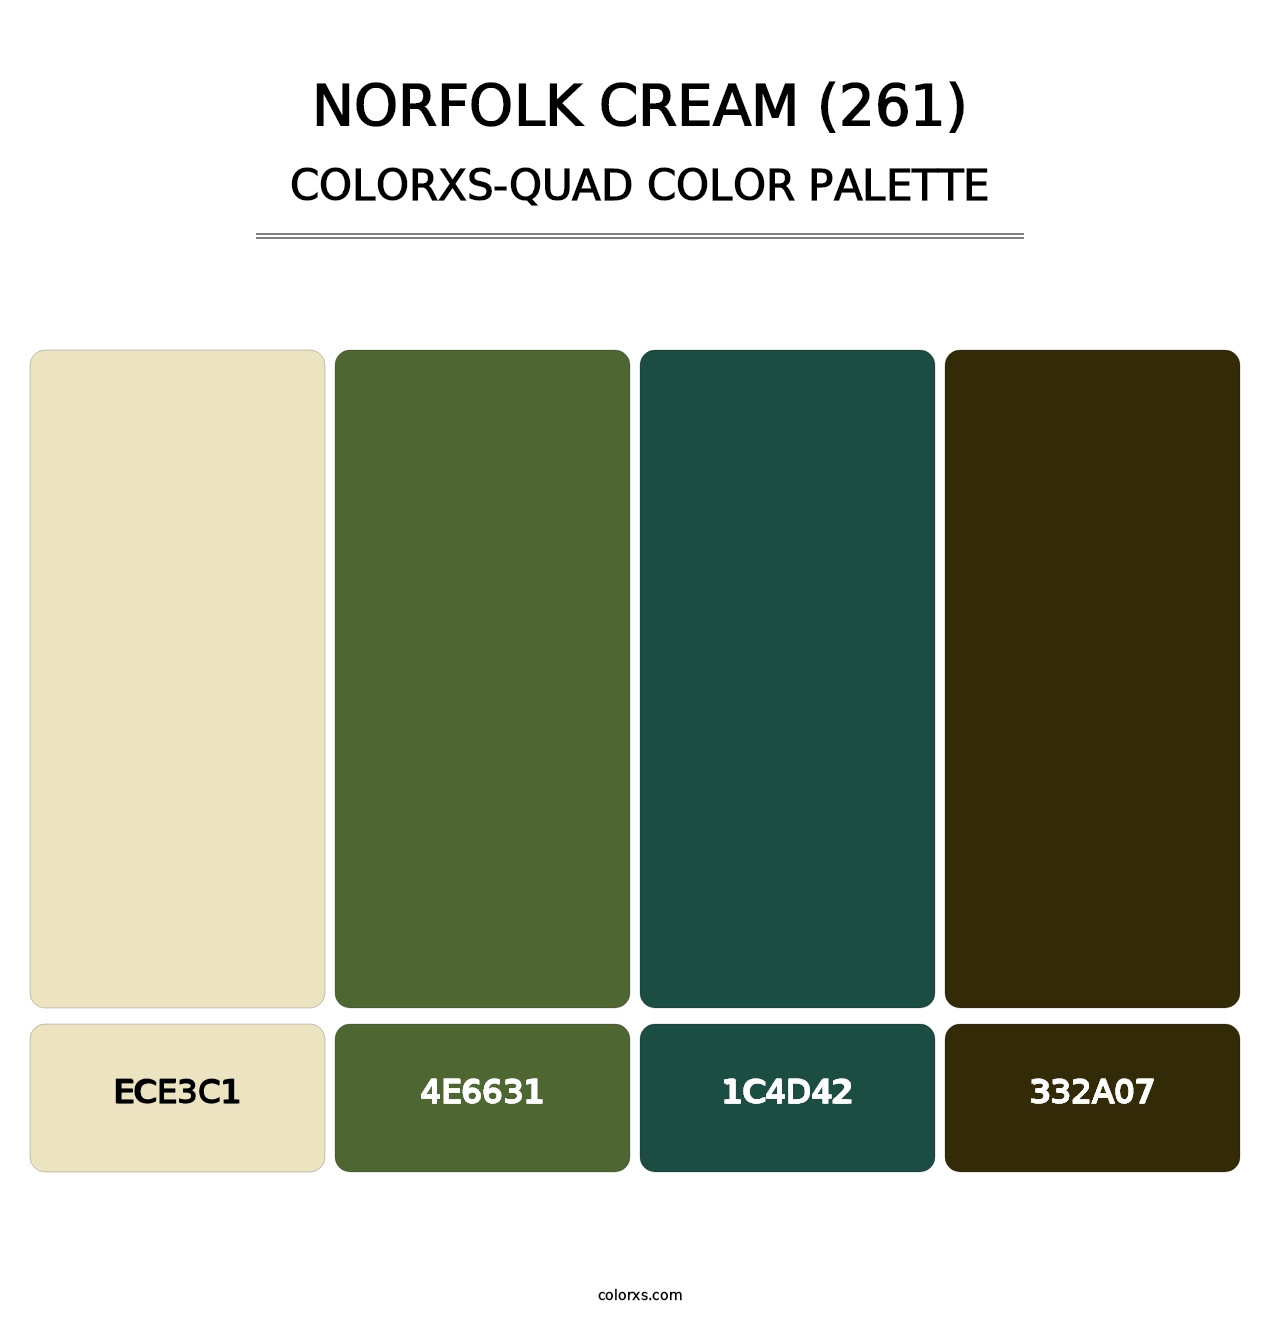 Norfolk Cream (261) - Colorxs Quad Palette